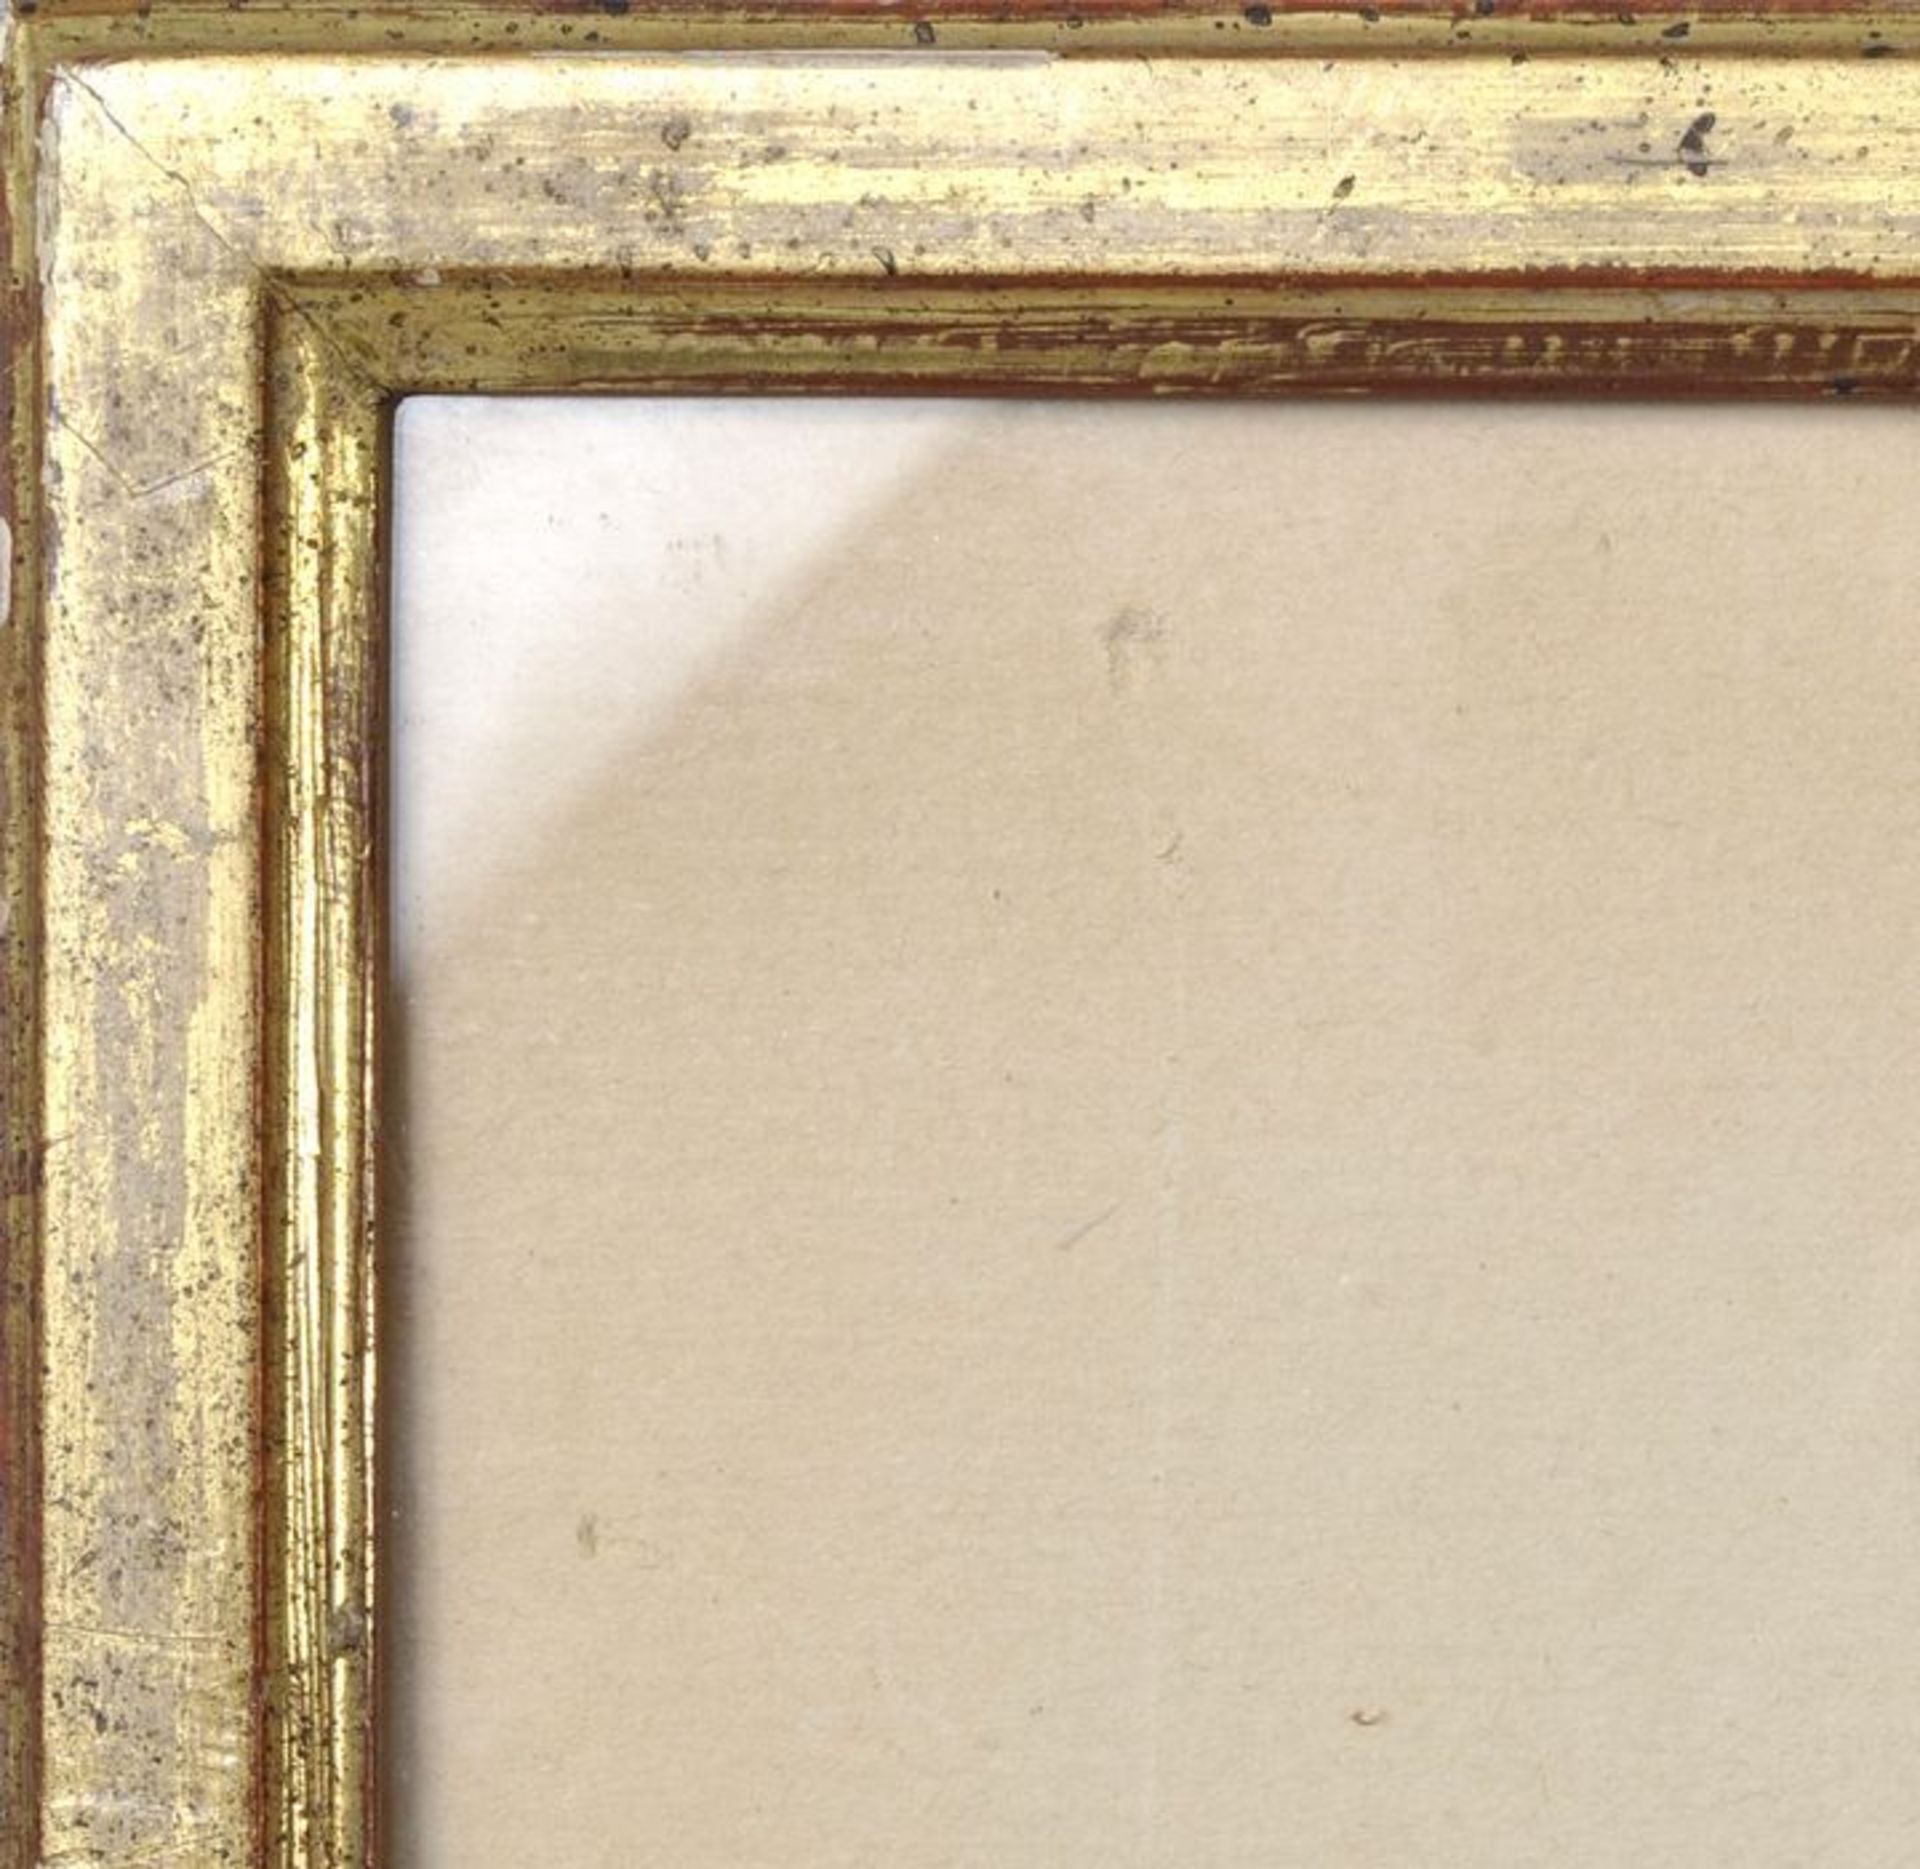 Rahmen, 20. Jh. 16 mm Holzleiste, gold mit durchscheinendem roten Grund, verglast, 30 x 54,8 cm (